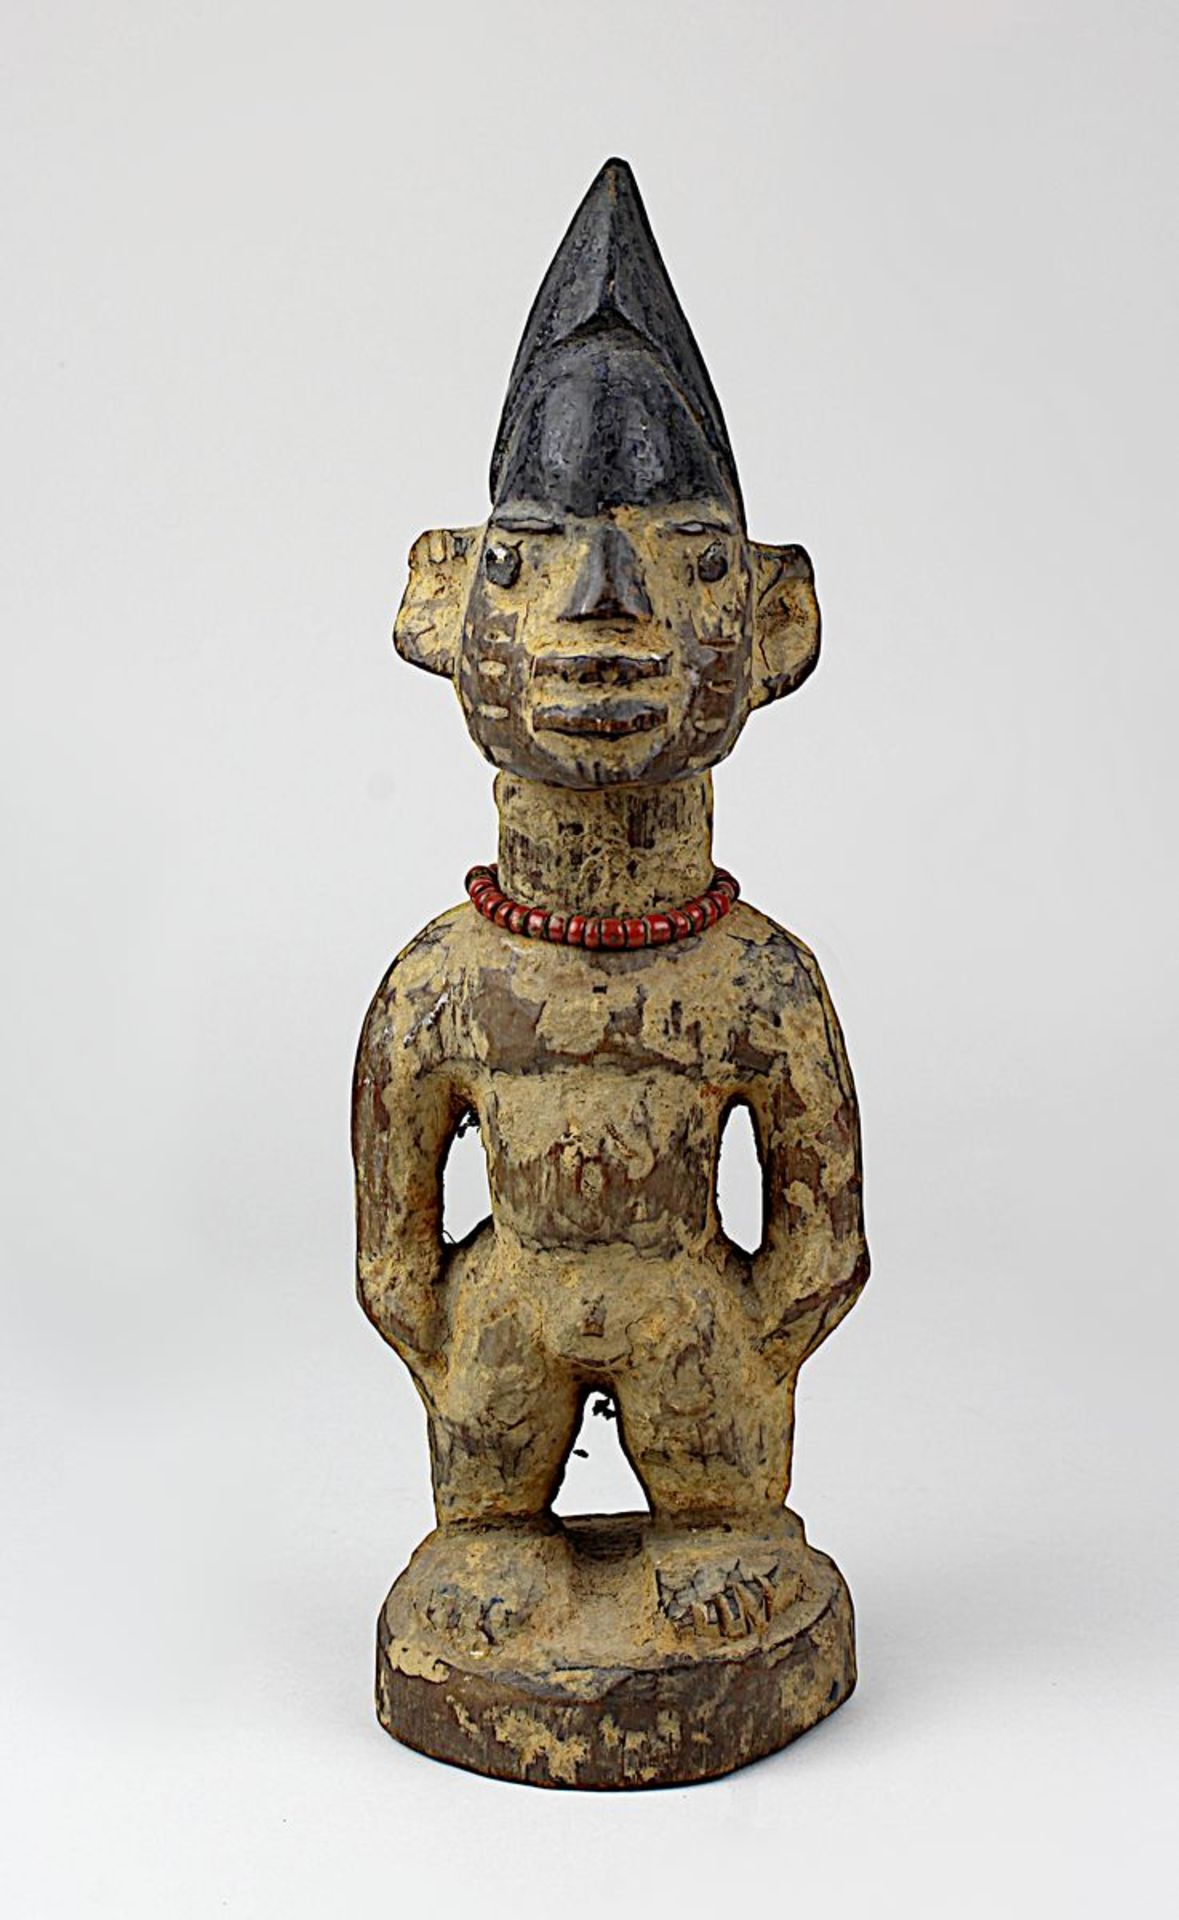 Ibeji Zwillingsfigur, Yoruba, Nigeria, stehende Holzfigur mit hoher haubenartiger Frisur, Gesicht